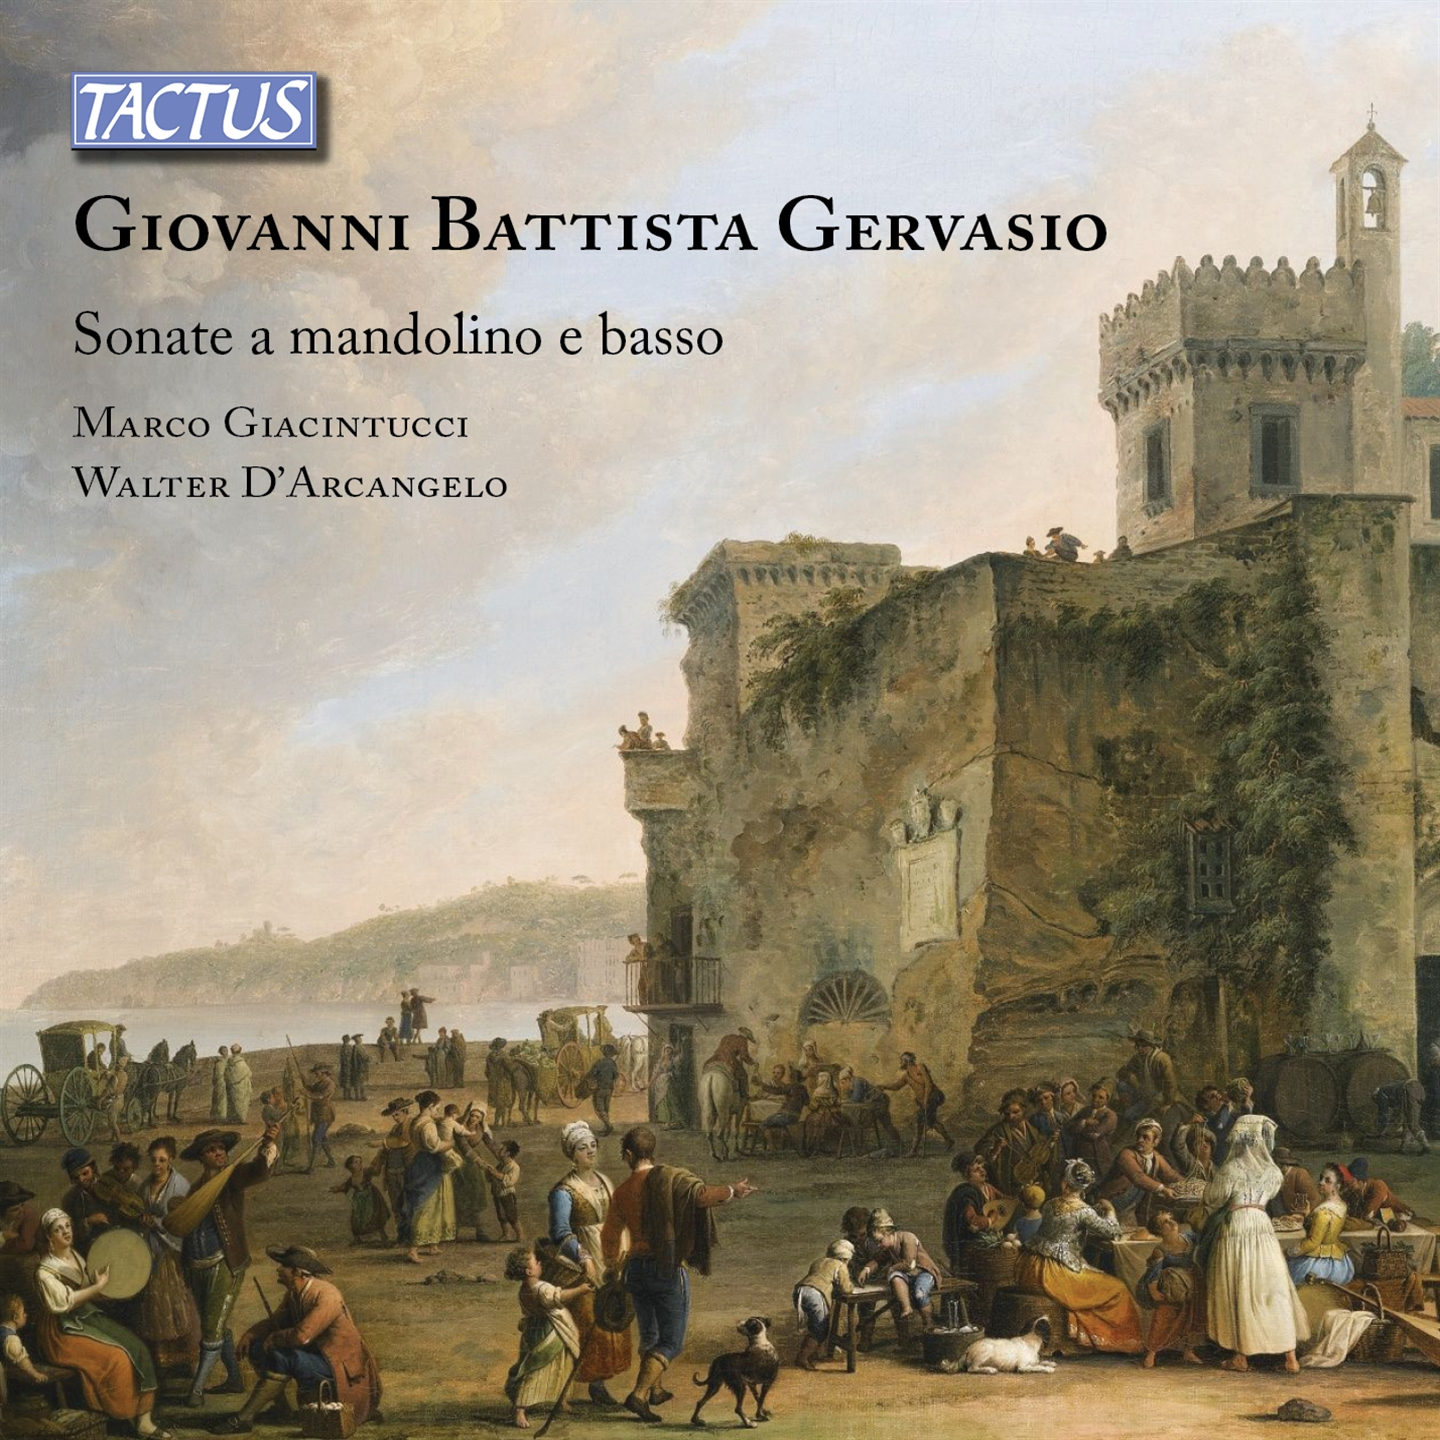 Marco Giacintucci, Walter D'Arcangelo - Gervasio: Sonate A Mandolino E Basso - Photo 1/1